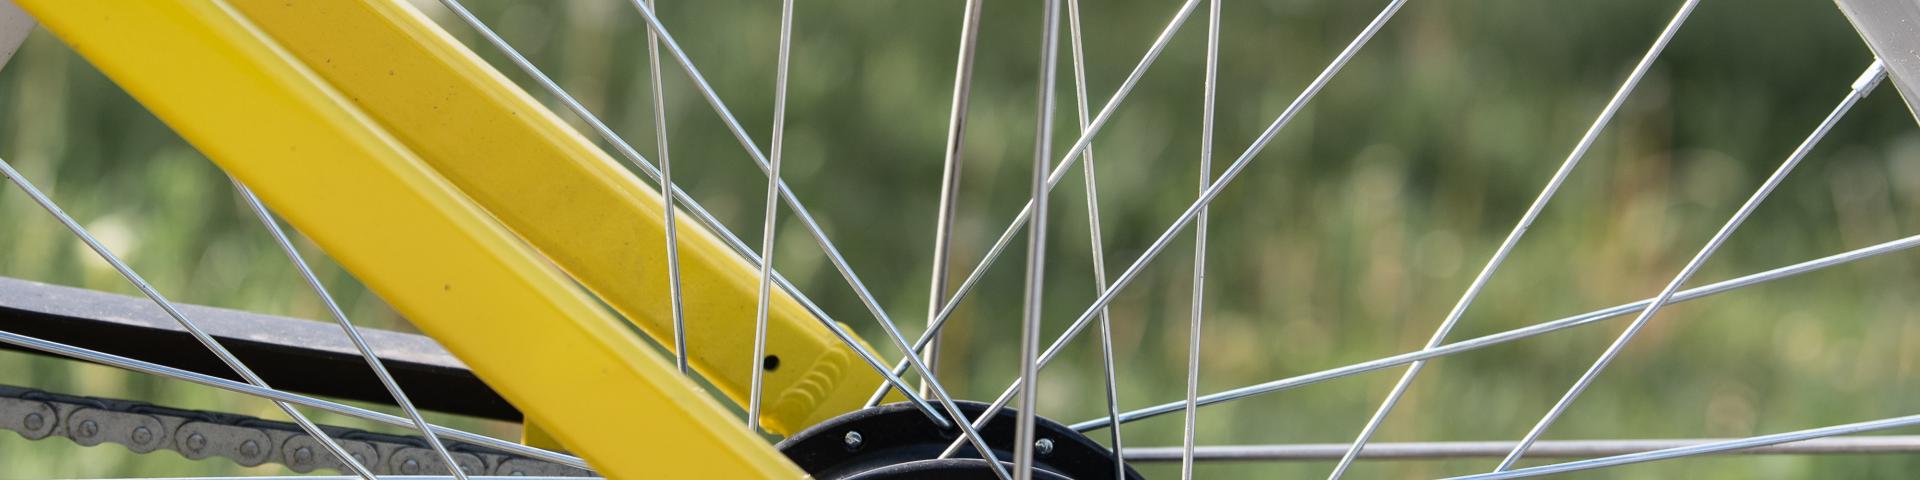 close up of yellow bike bike wheel 